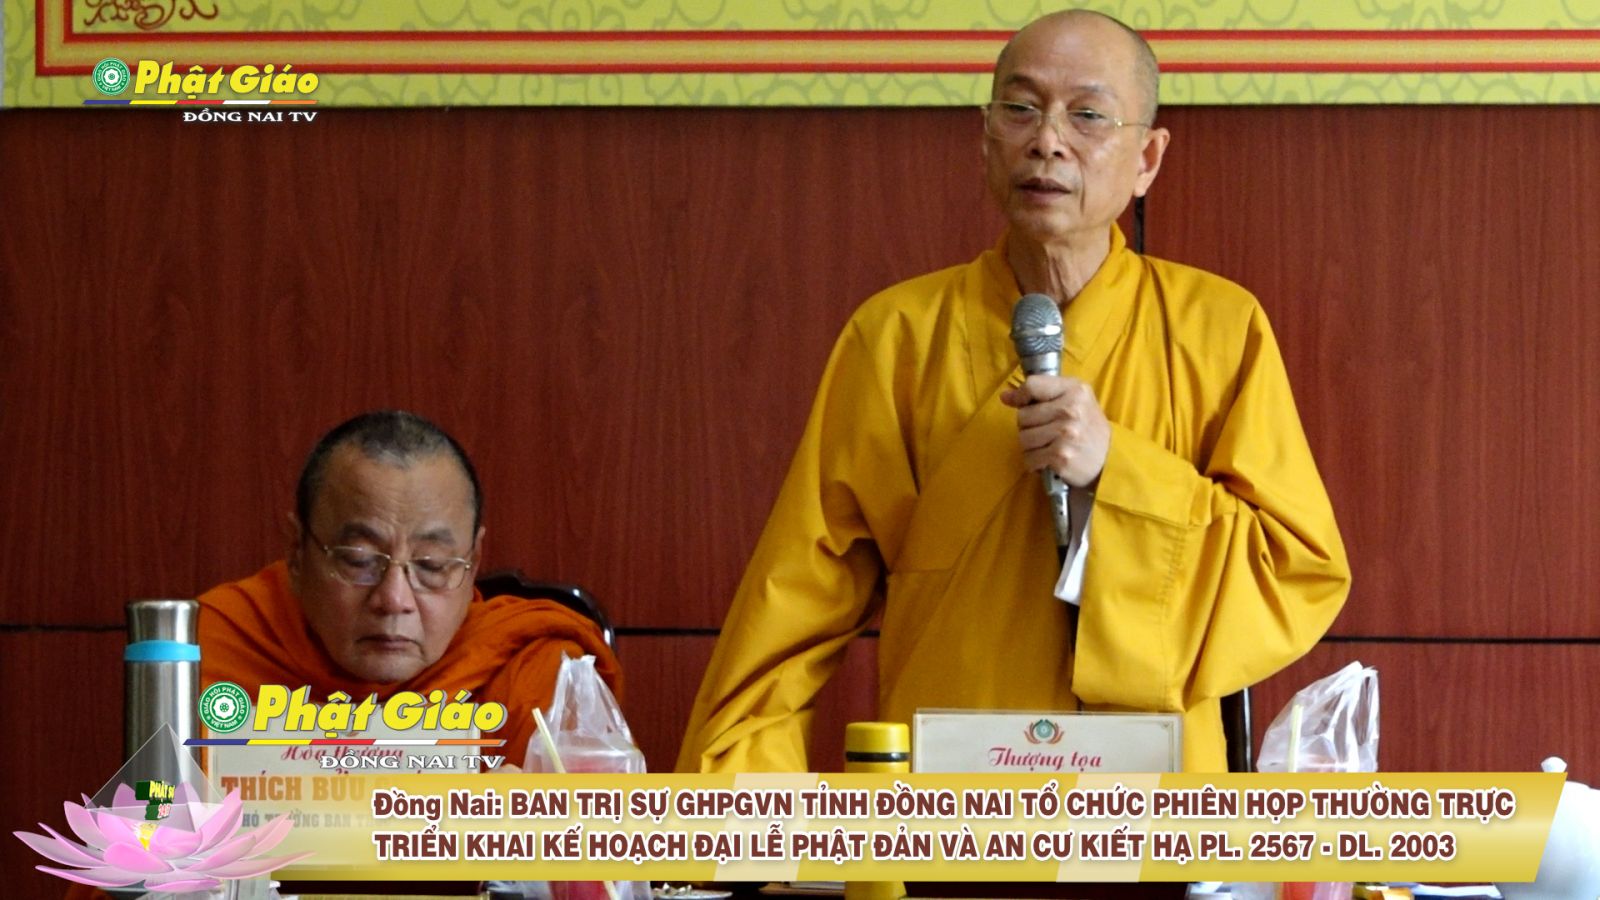 [Video] Đồng Nai: Ban Trị sự GHPGVN tỉnh tổ chức Phiên họp Thường trực - Triển khai kế hoạch Đại lễ Phật đản và An cư Kiết hạ PL. 2567 - DL. 2023